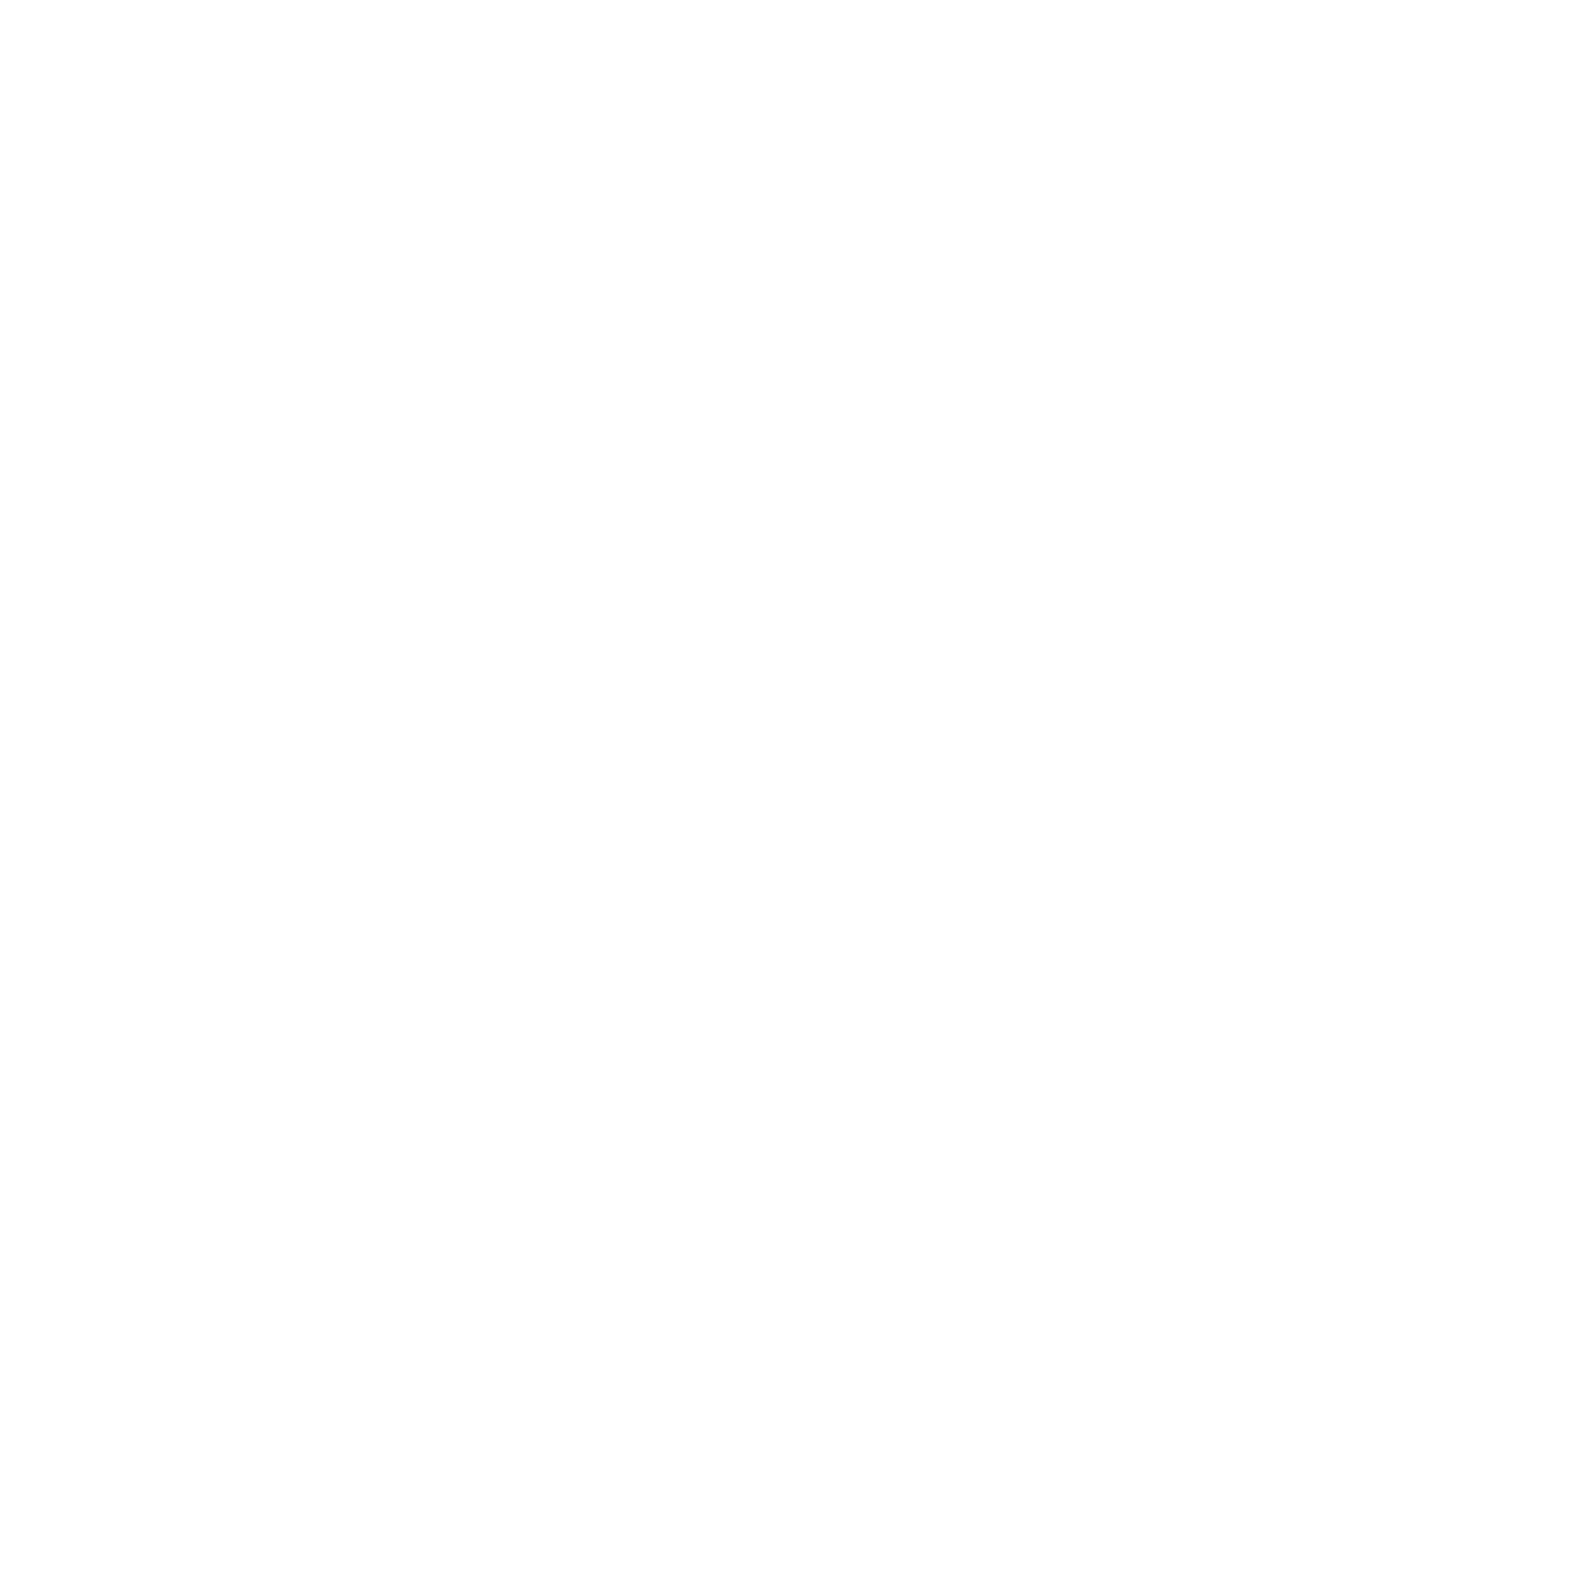 G5 Entertainment logo pour fonds sombres (PNG transparent)